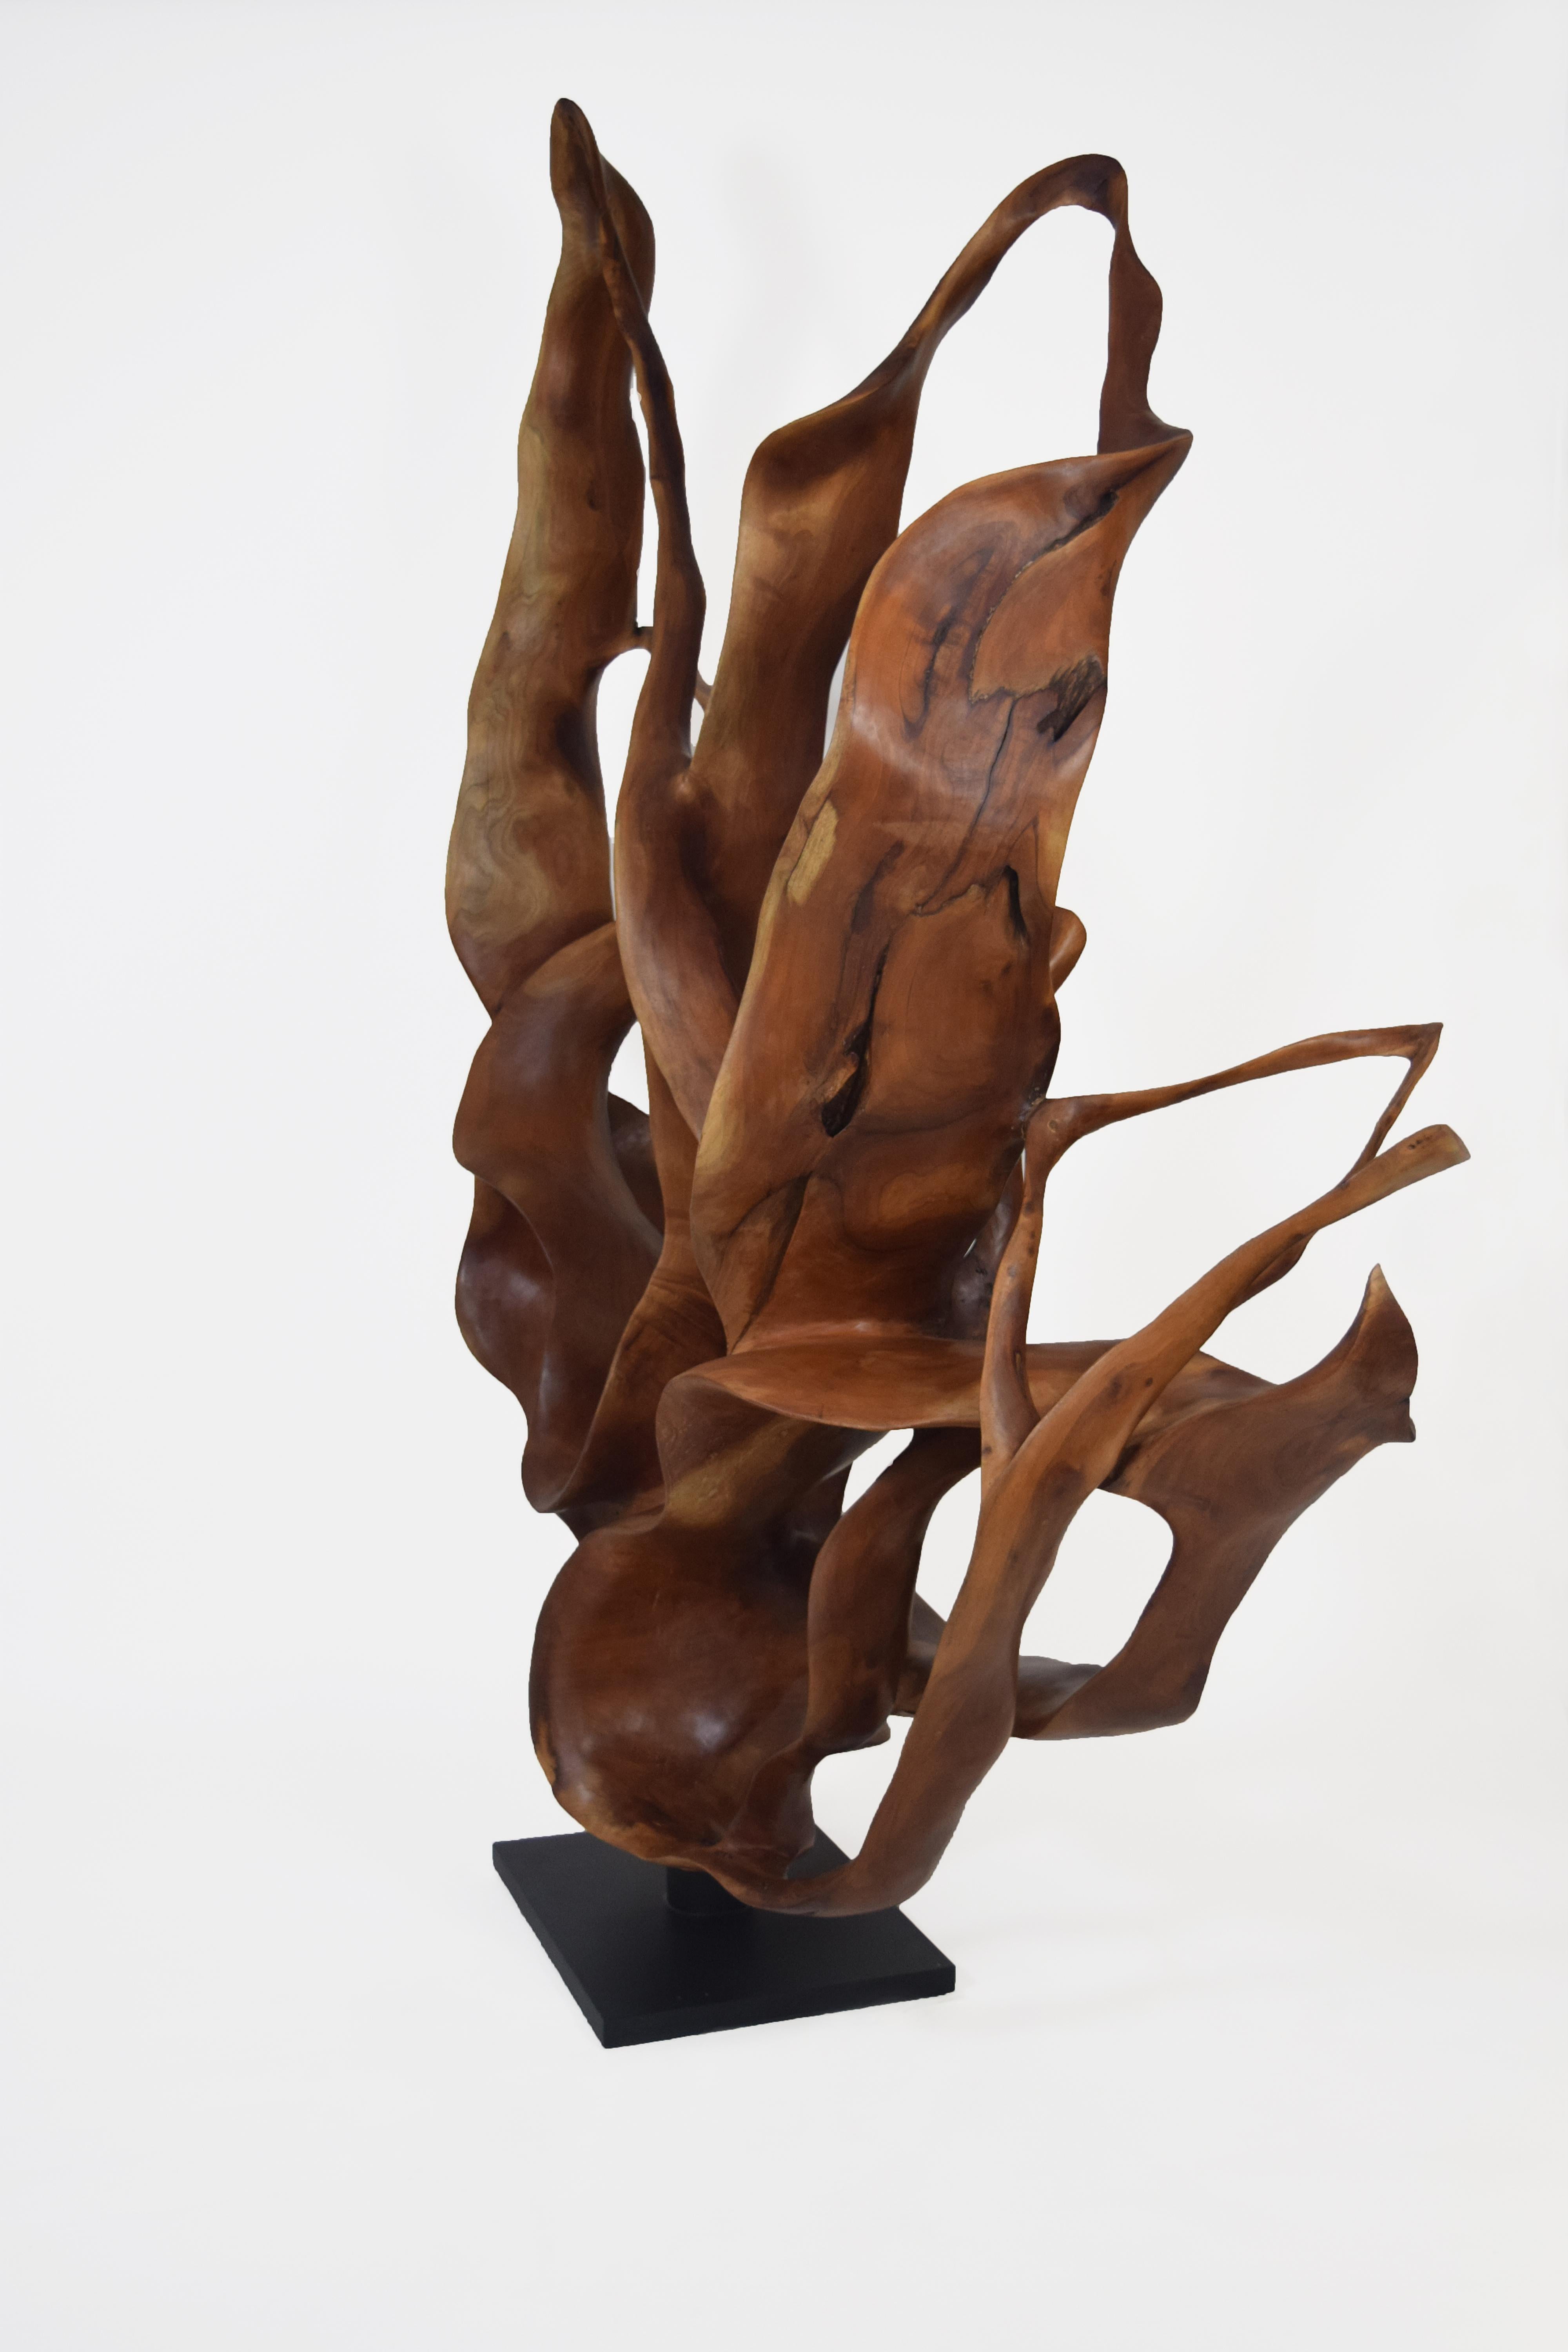 Racines d'acajou

La Joaquim Ingravidesa Sculpture Alliance est formée par un groupe international de sculpteurs et de designers qui collaborent pour créer des sculptures abstraites inspirées par la nature. Ils travaillent souvent ensemble pendant